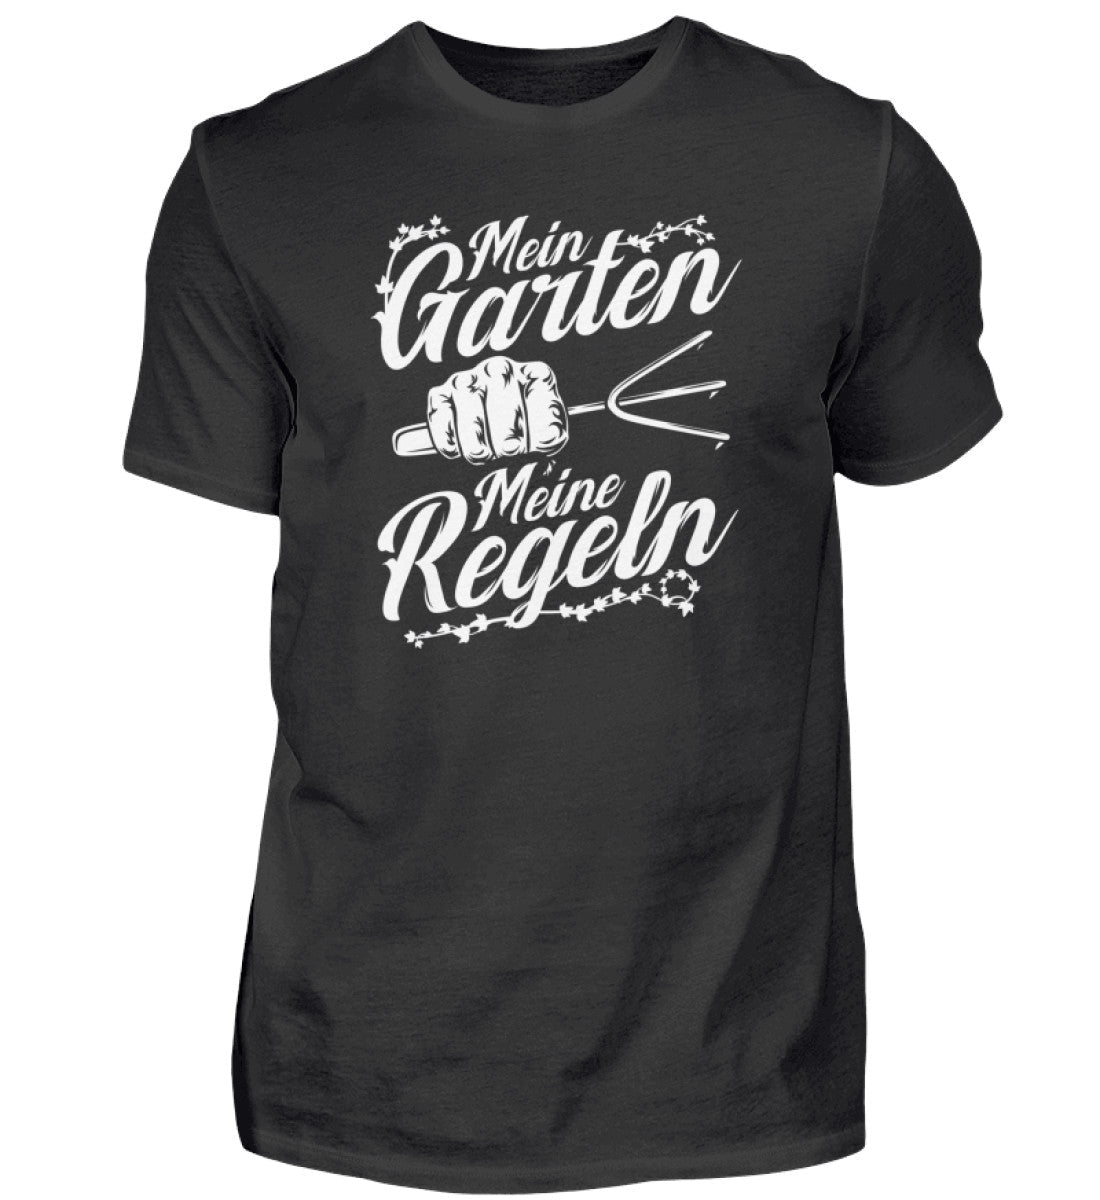 Mein Garten meine Regeln · Herren T-Shirt-Herren Basic T-Shirt-Black-S-Agrarstarz